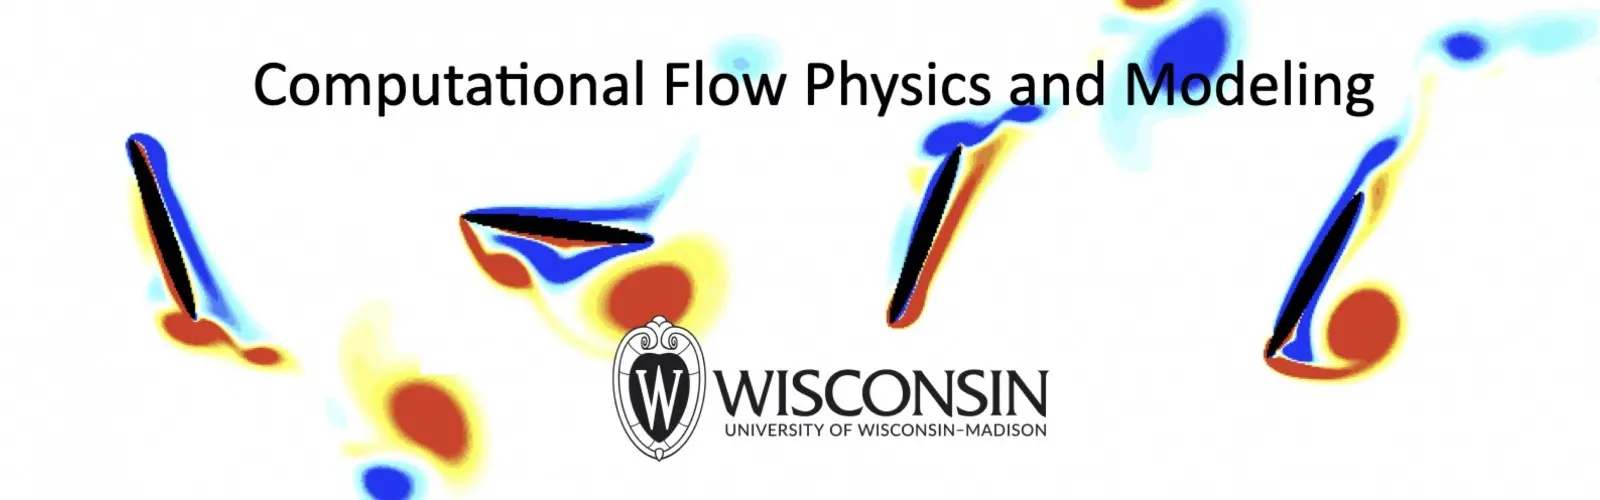 Computational Flow Physics and Modeling Logo